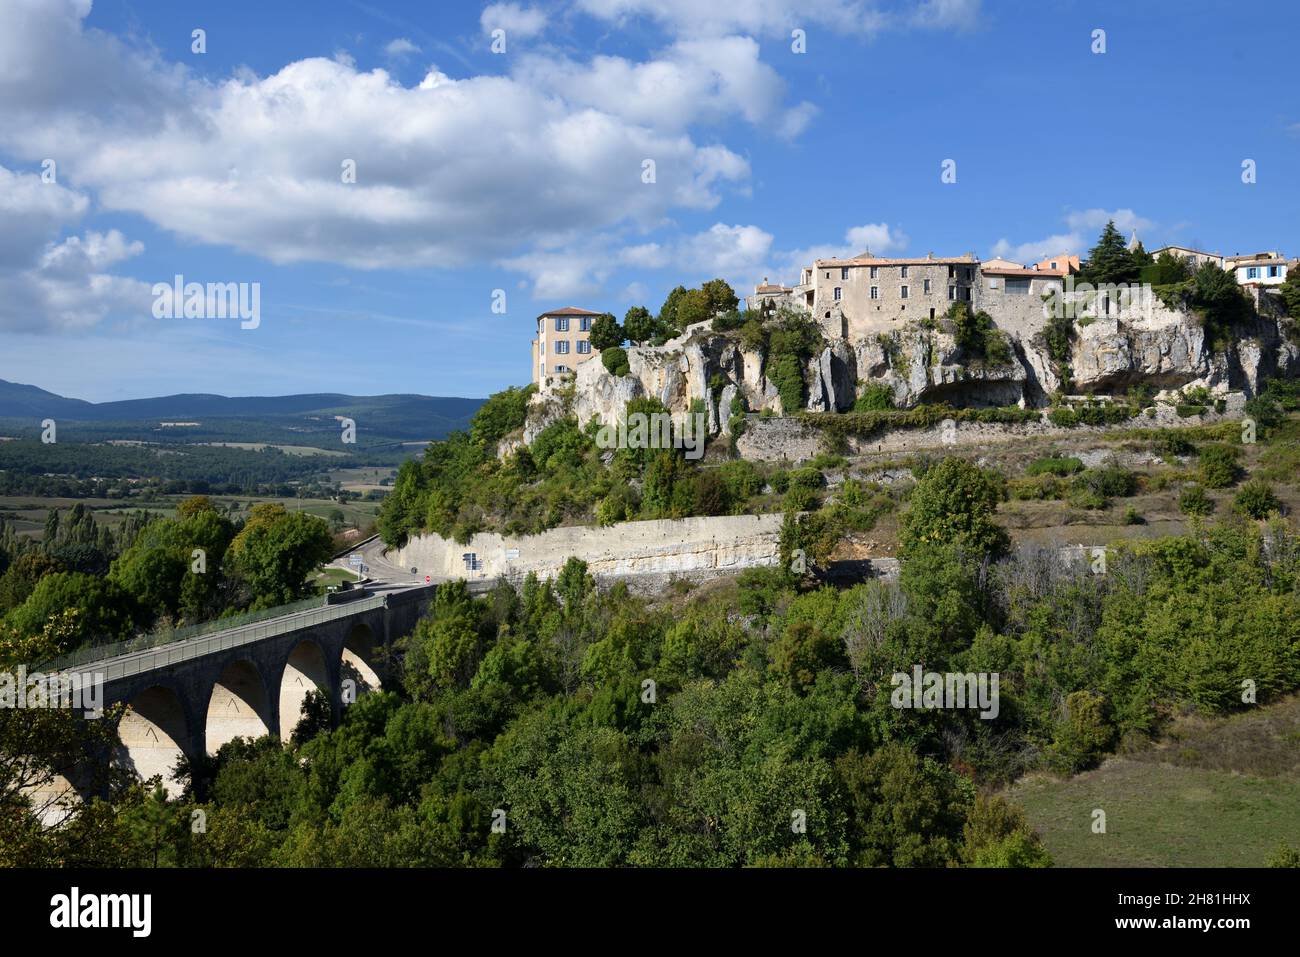 Vue panoramique sur le village Hilltop ou le village perché de Sault avec plaine et collines agricoles en arrière-plan Vaucluse Provence France Banque D'Images